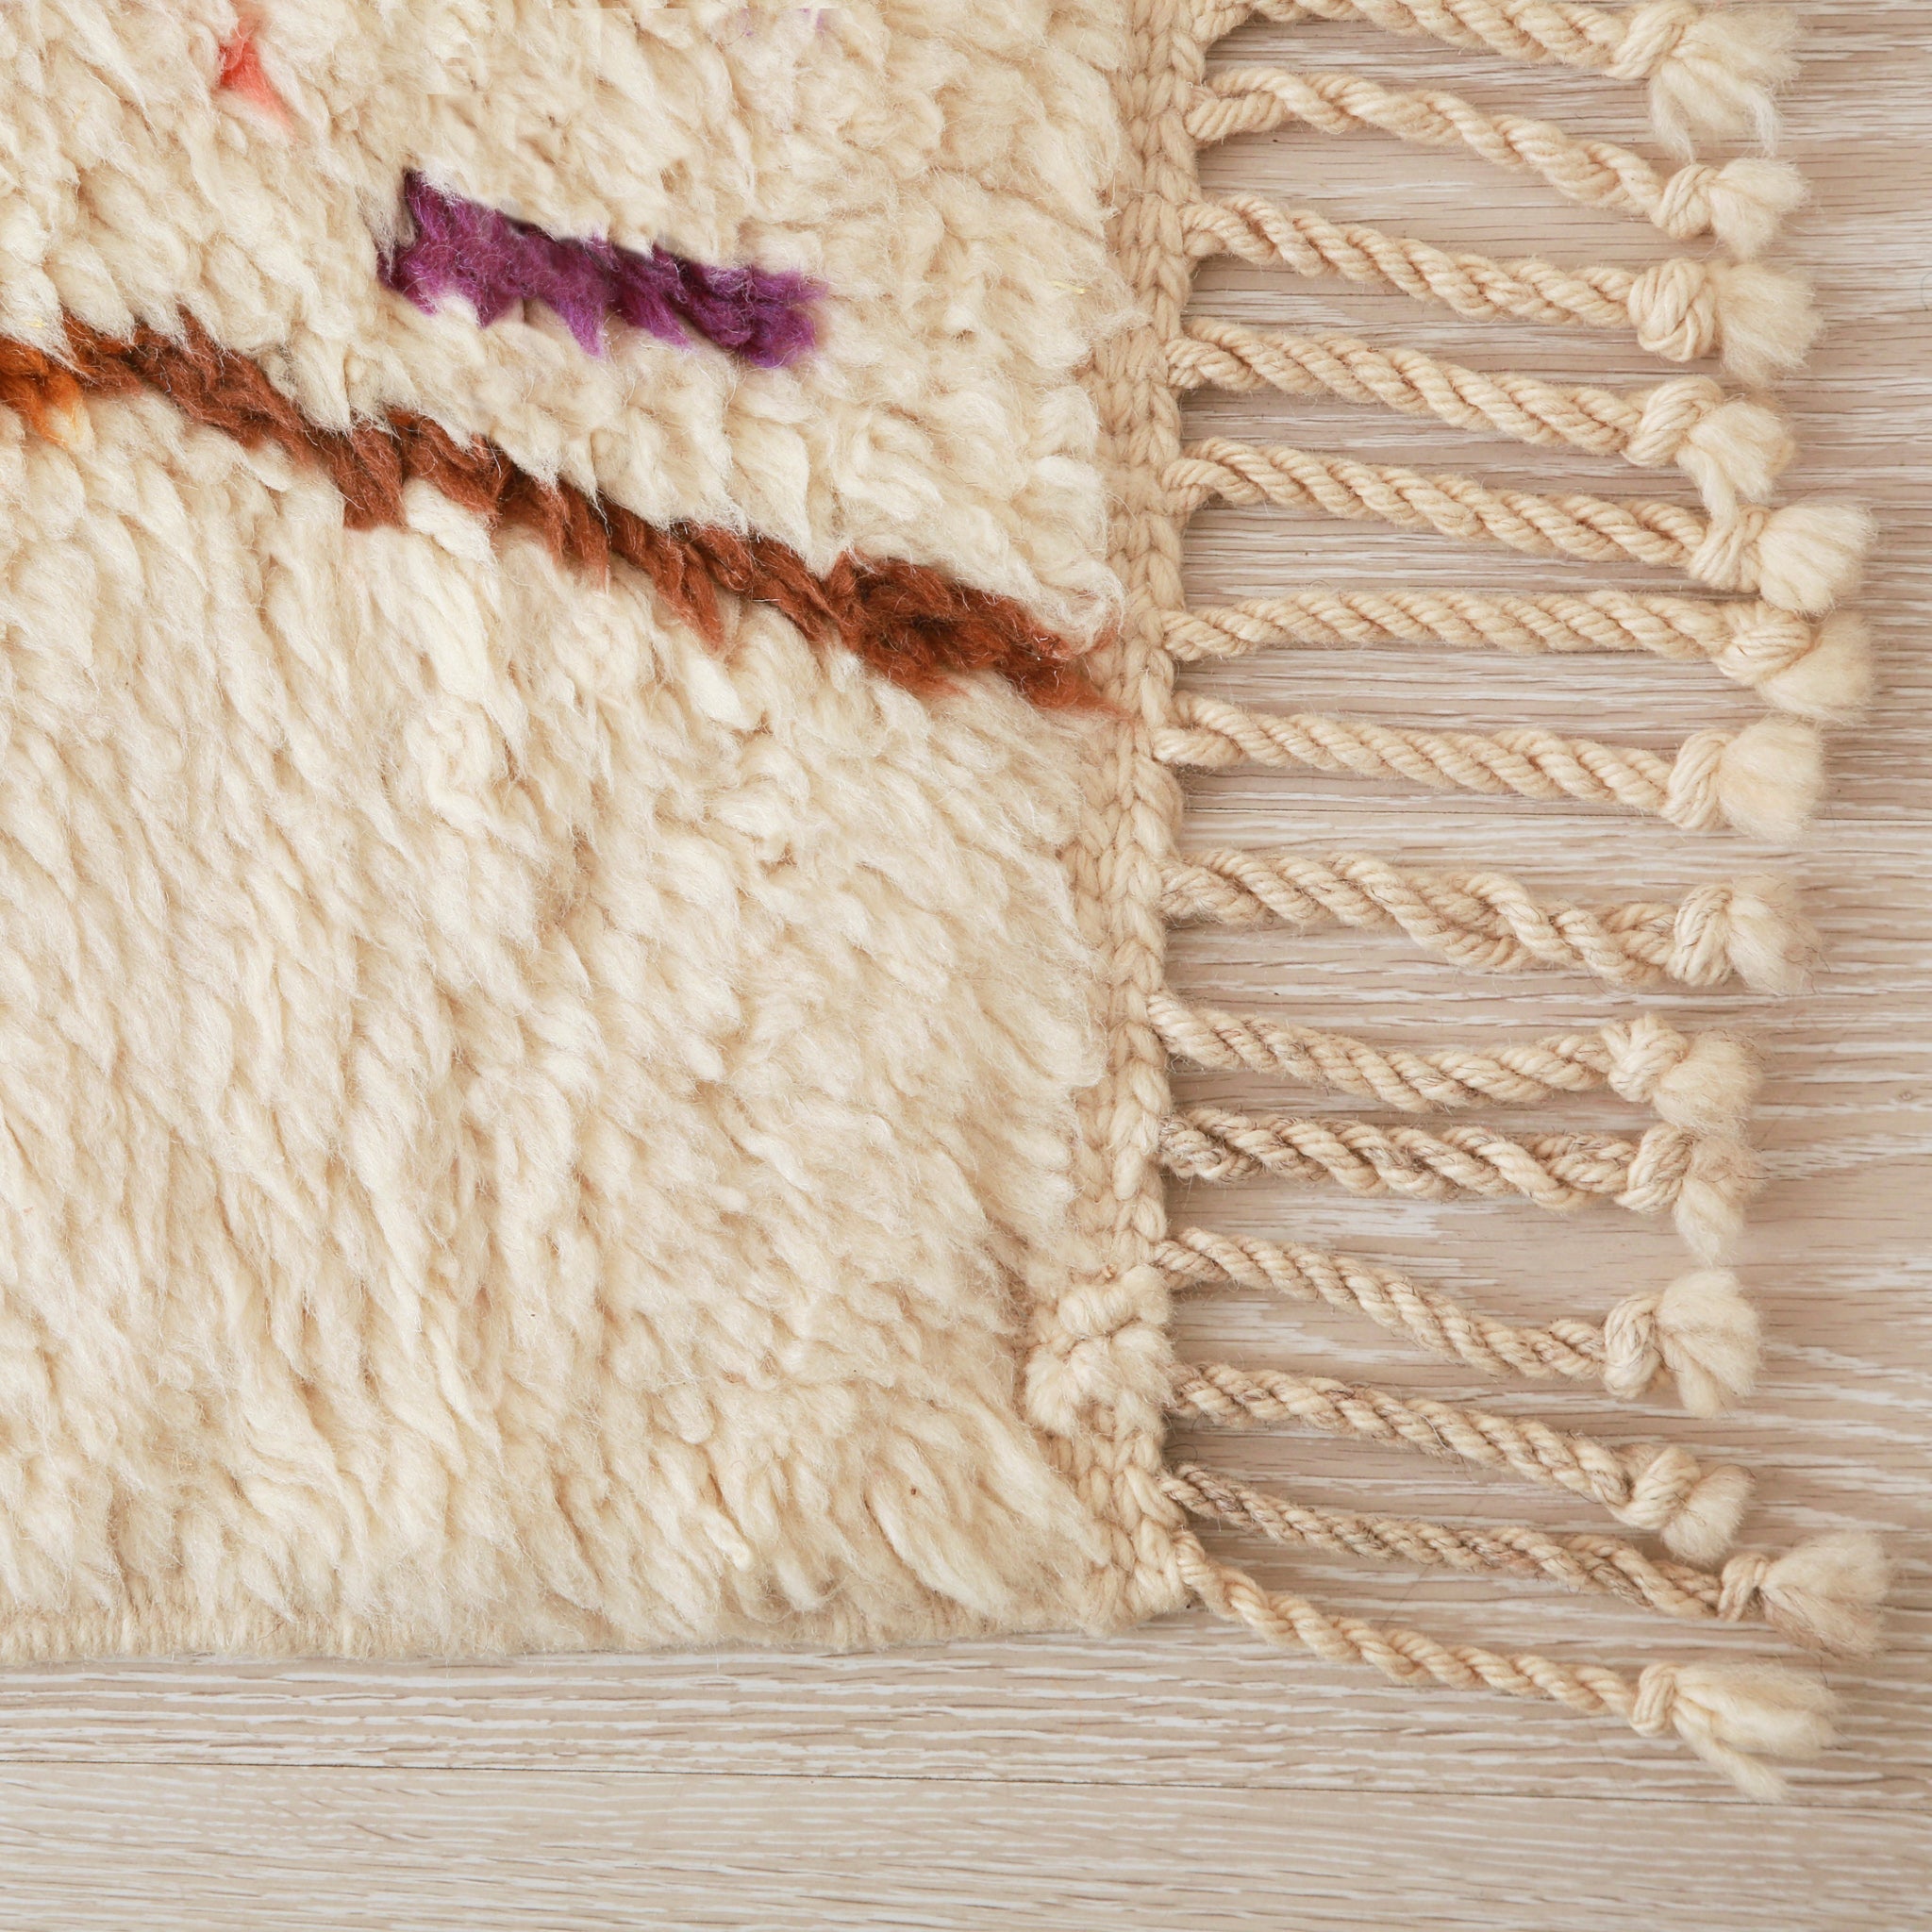 angolo di un tappeto stile azilal con un lunga frangia